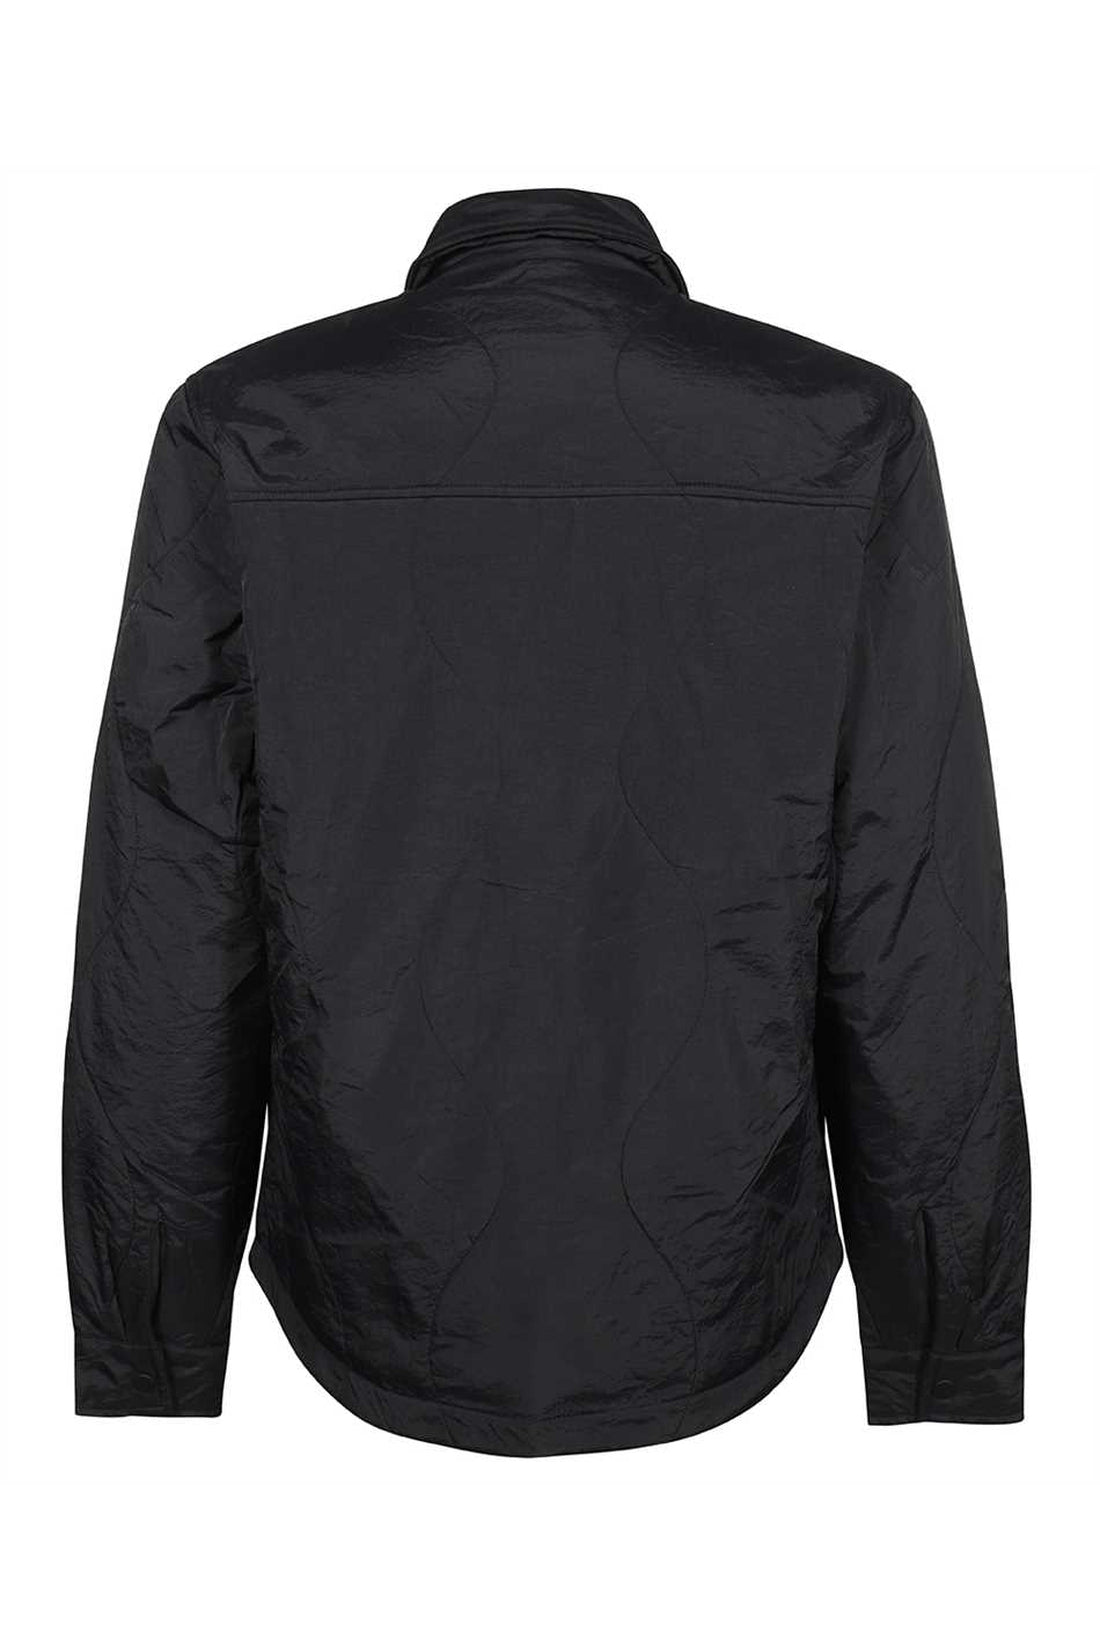 Les Deux-OUTLET-SALE-Nylon jacket-ARCHIVIST